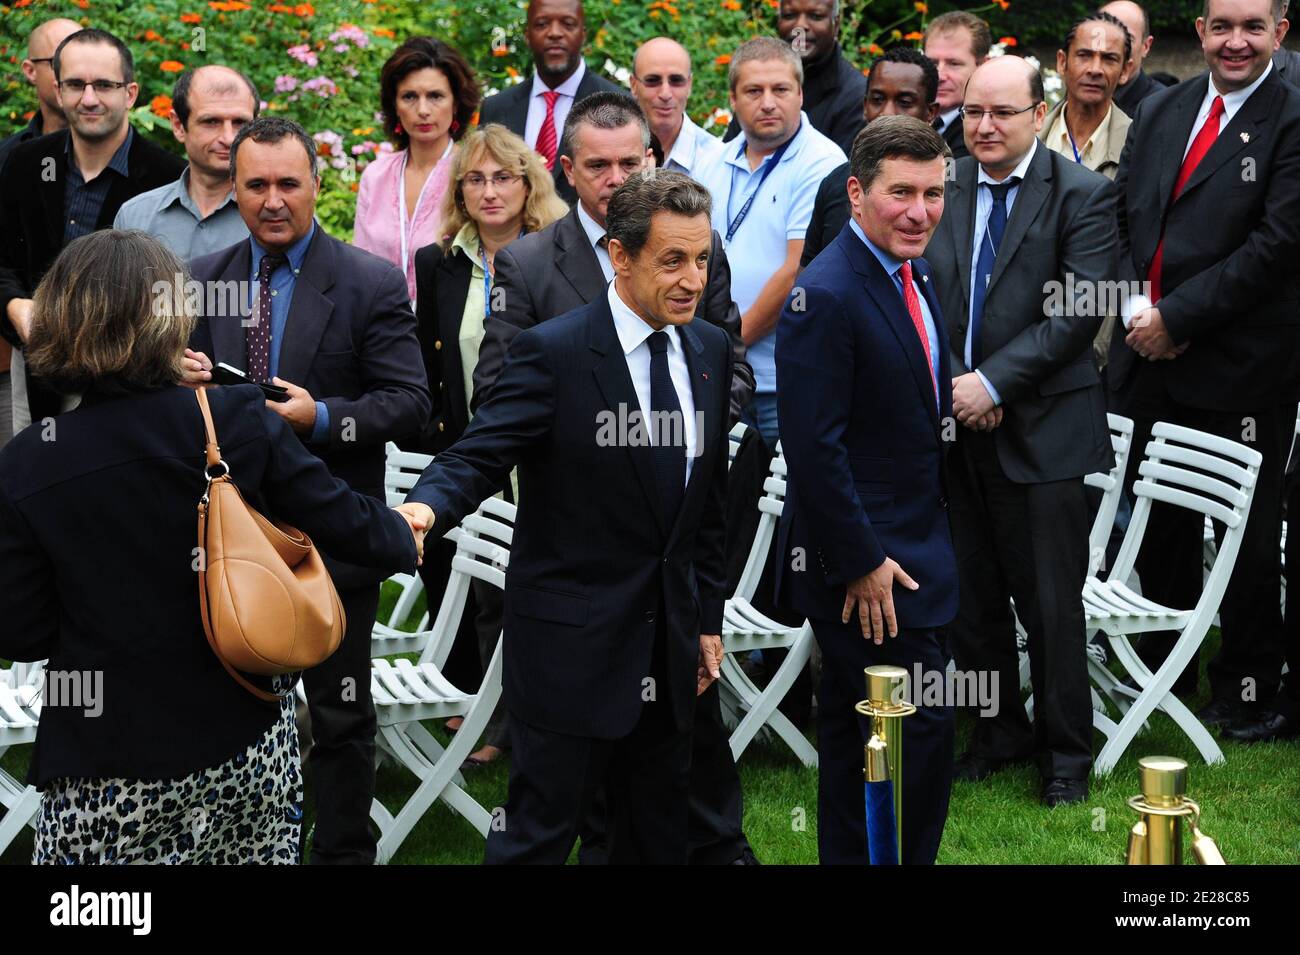 Le président français Nicolas Sarkozy et l'ambassadeur des États-Unis en France Charles H. Rivkin sont photographiés lors de la célébration du 10e anniversaire du 11 septembre à l'ambassade des États-Unis à Paris, en France, le 9 septembre 2011. Photo de Mousse/ABACAPRESS.COM Banque D'Images